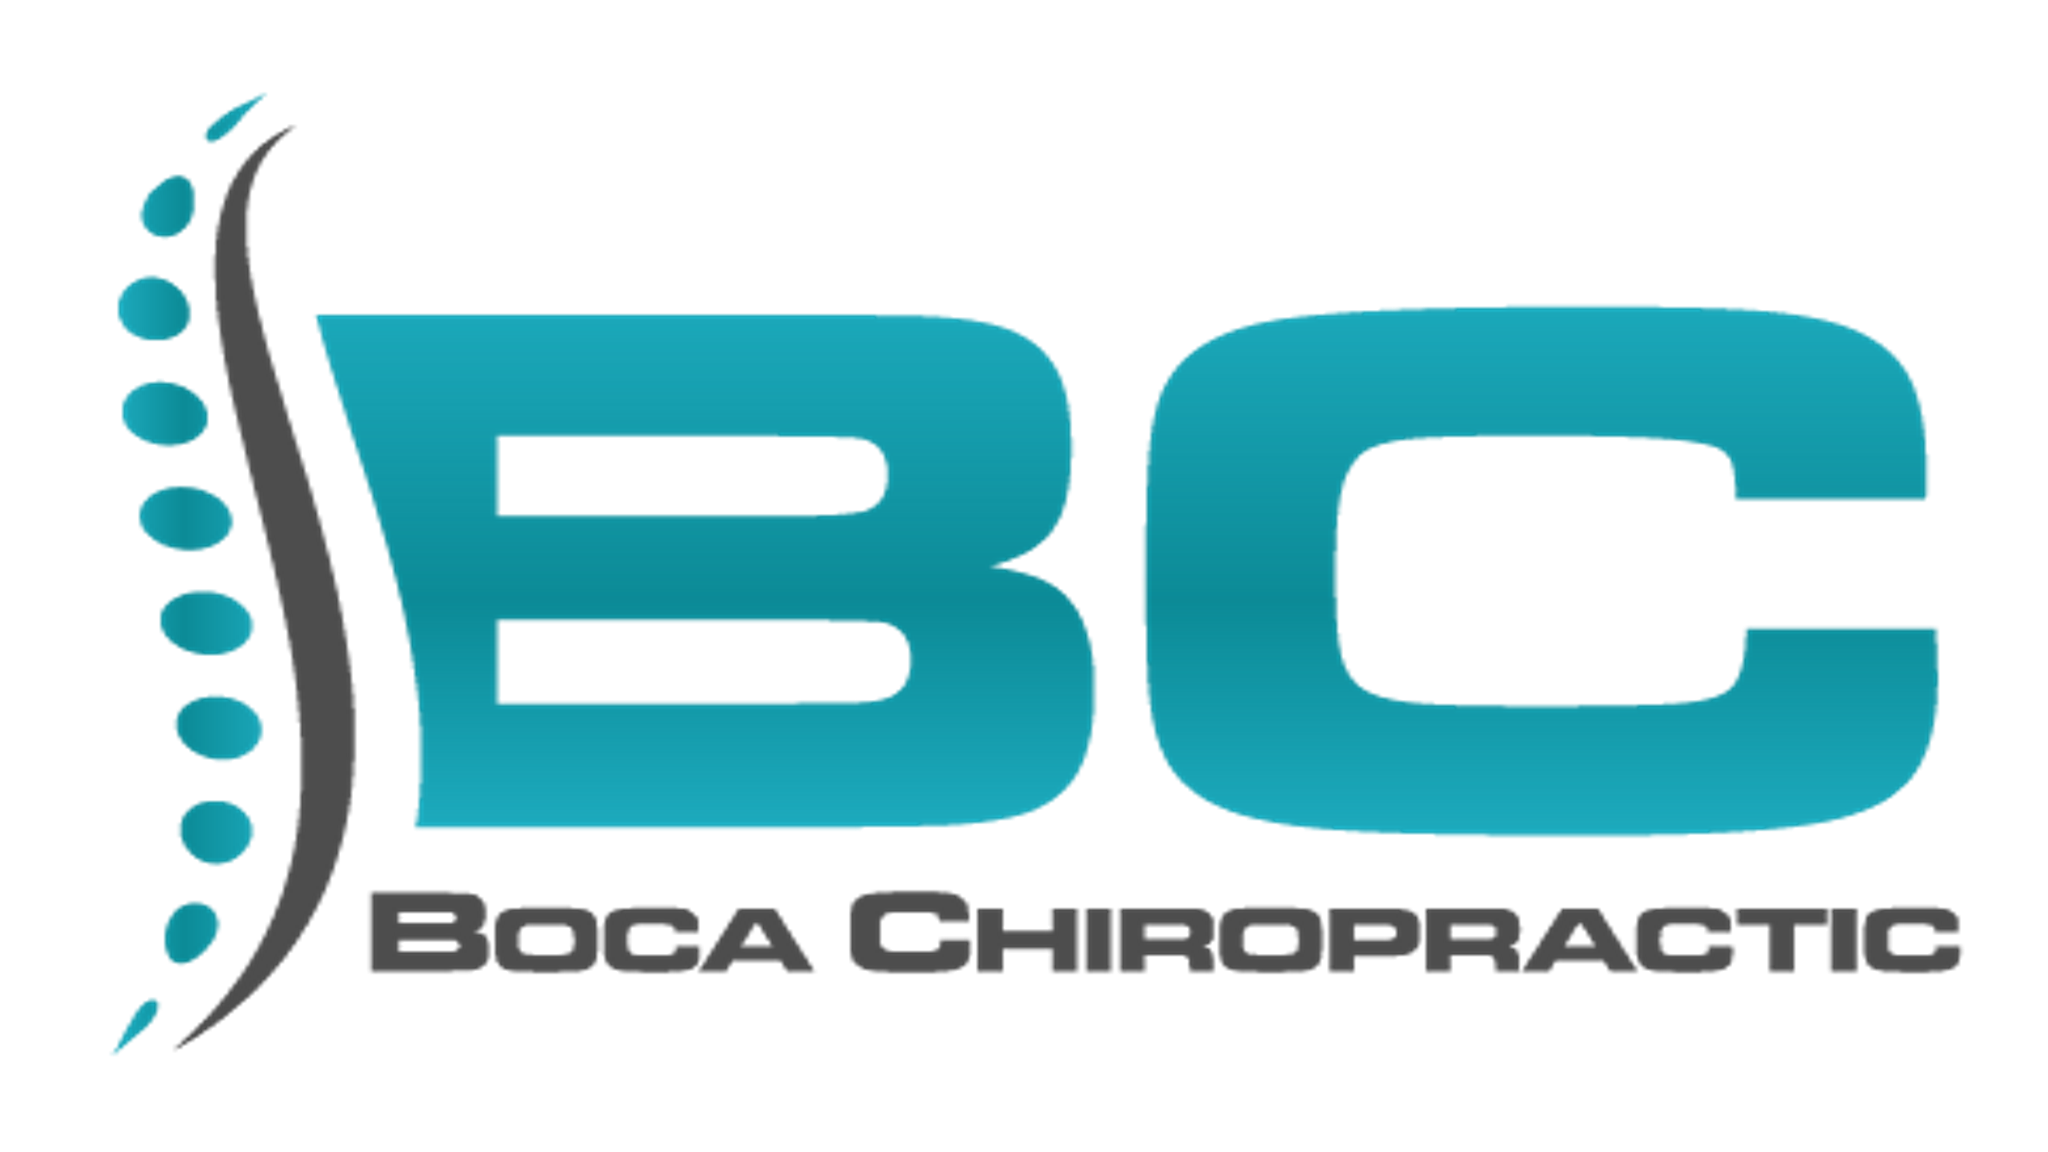 Boca Chiropractic